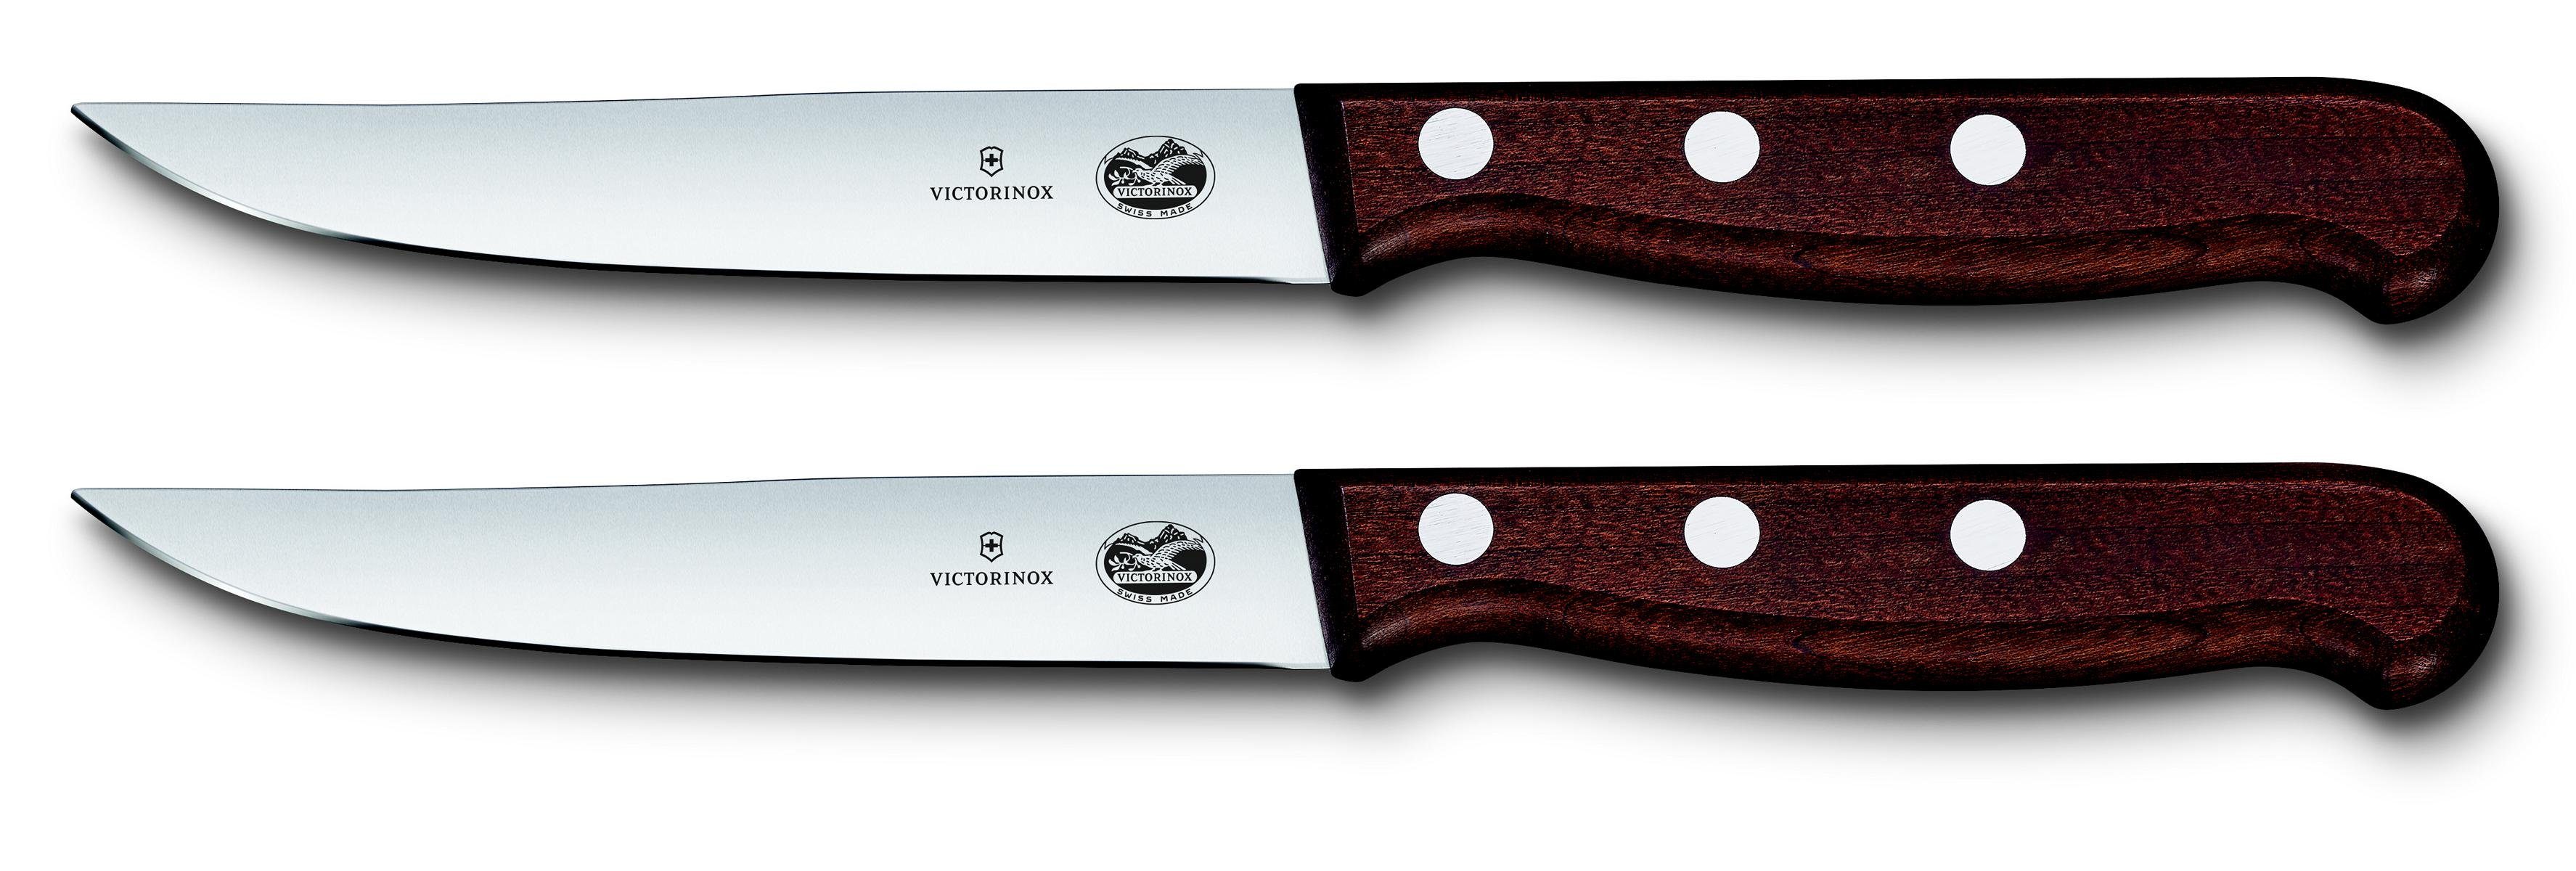 Taschenmesser ger Steakmesser-Set, Victorinox mod Ahornholz, Schliff,12 cm,2-teilig,Gesch.